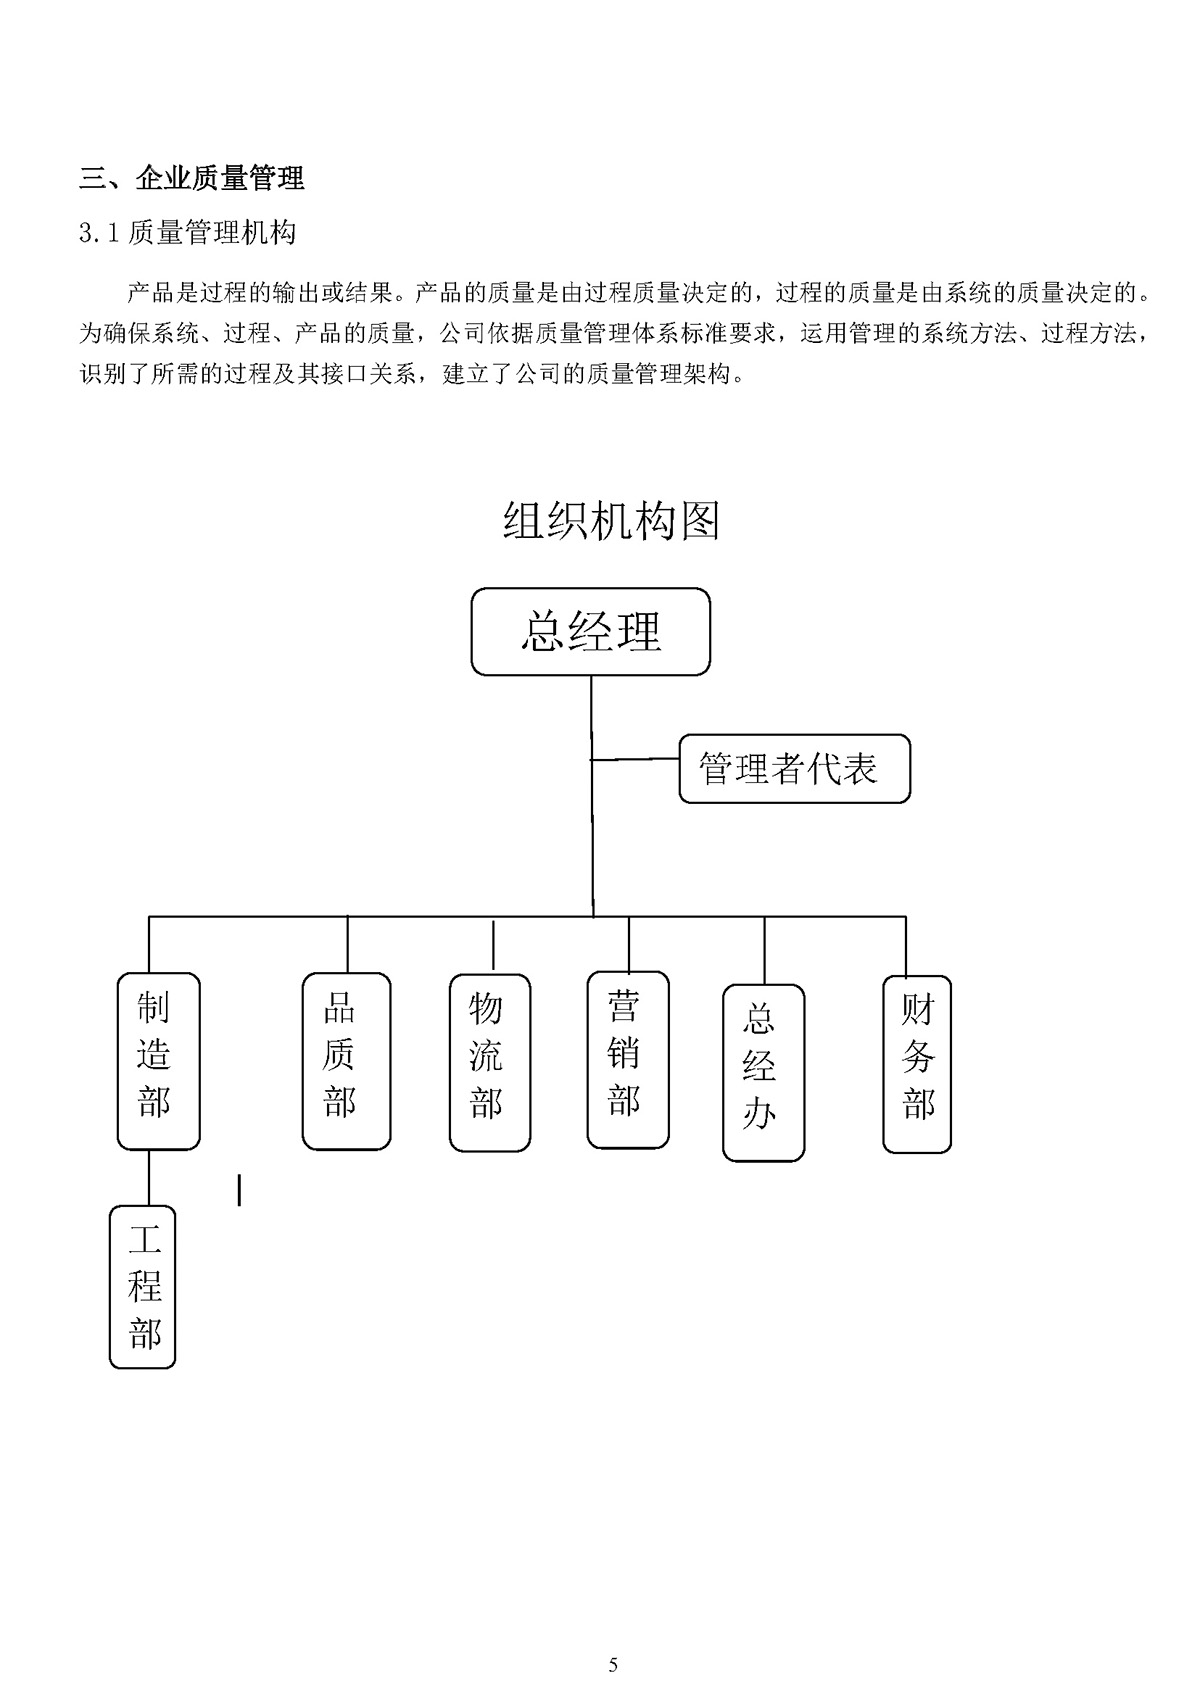 尊龙凯时泵业质量诚信报告(图5)